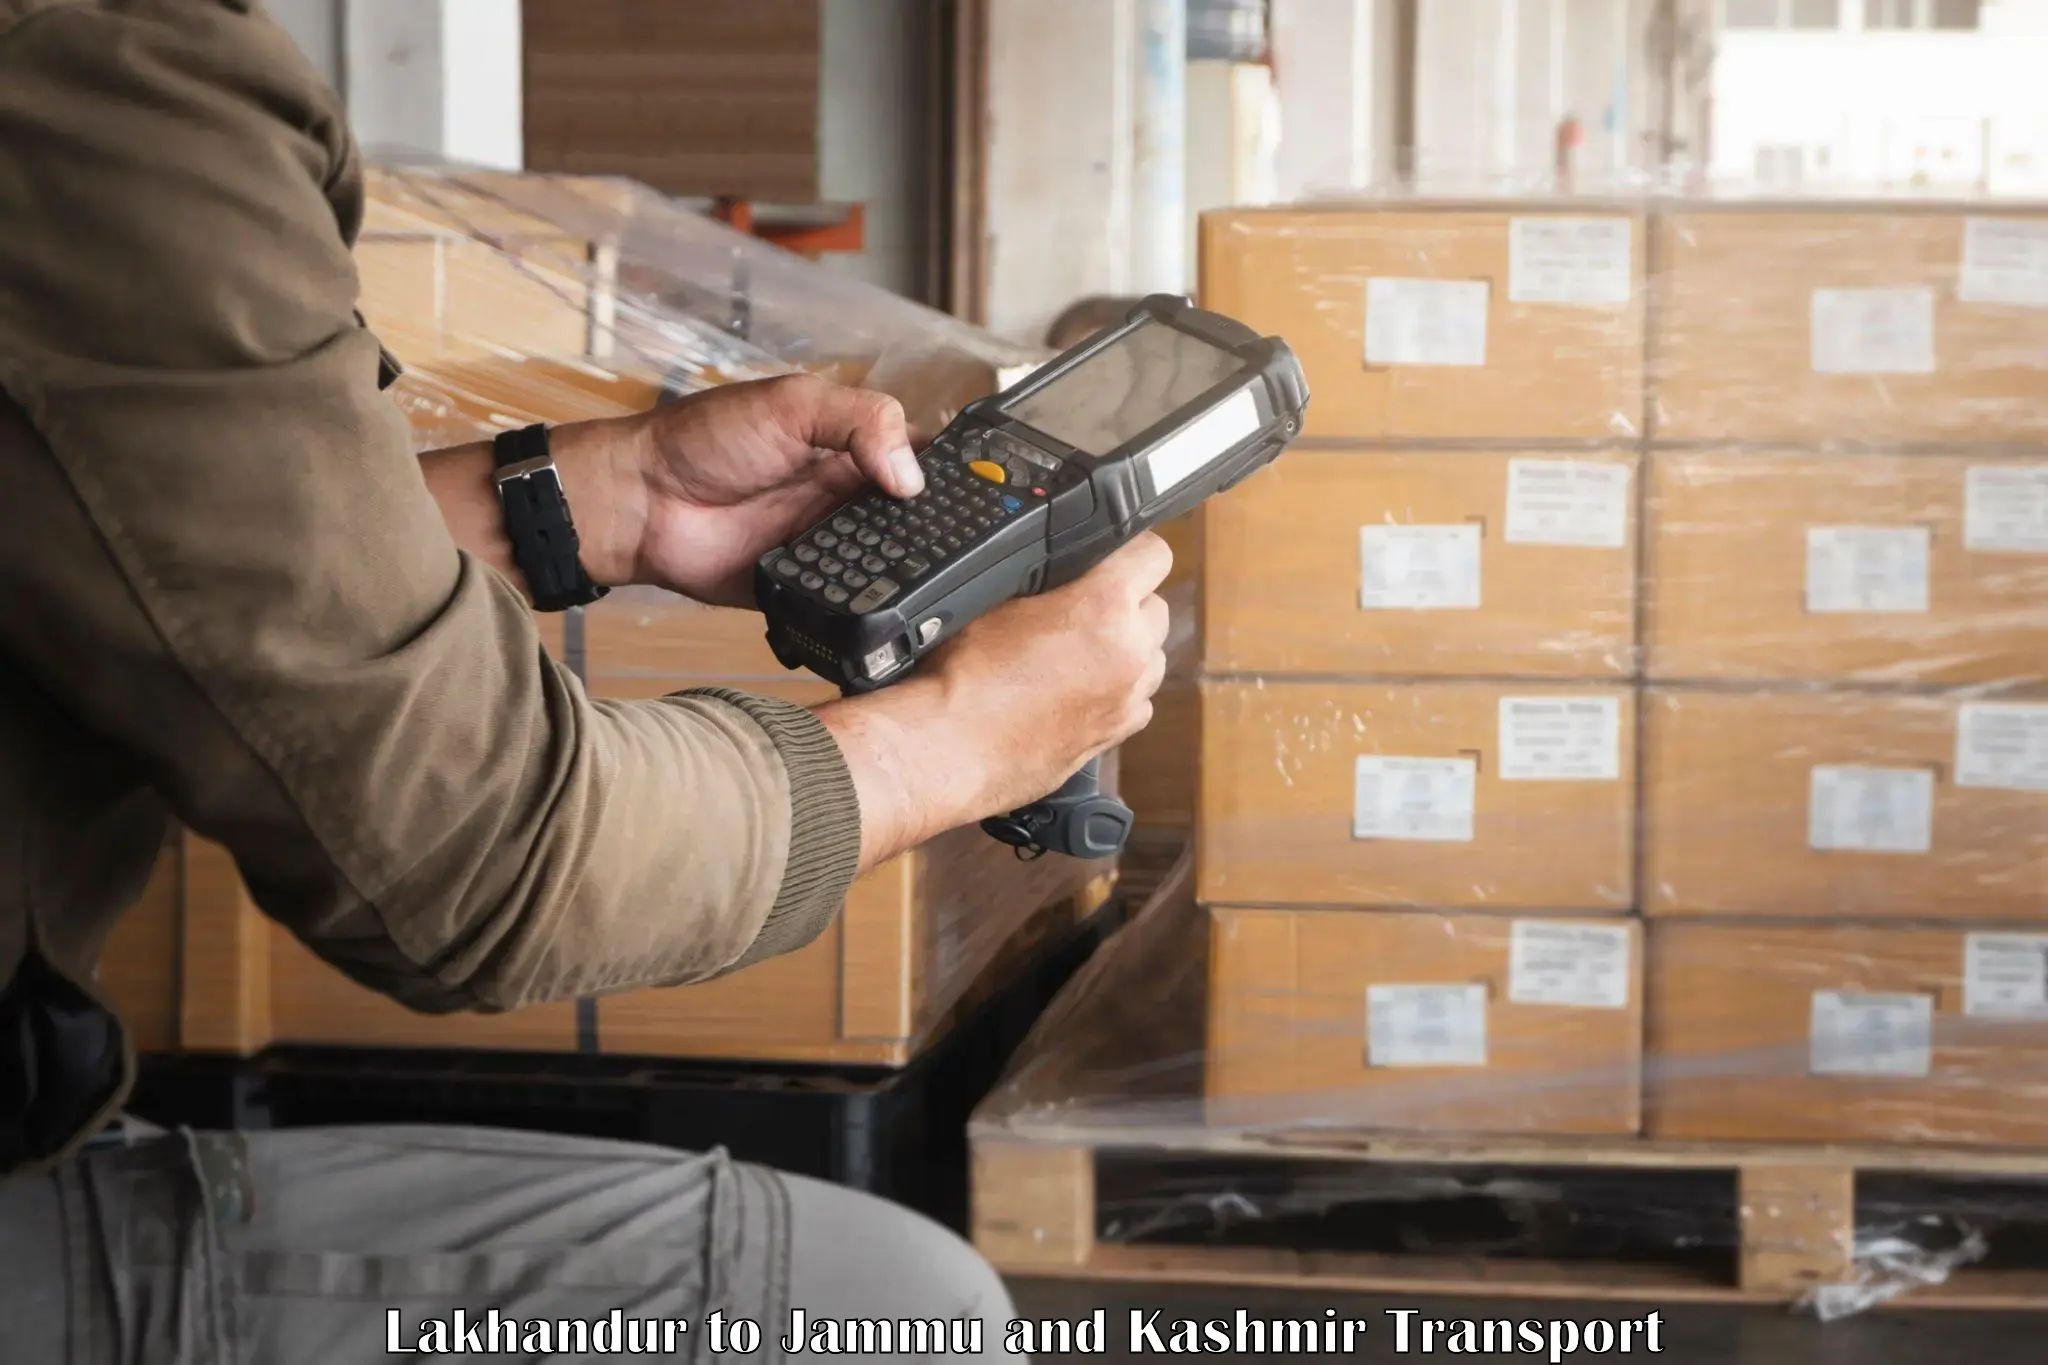 Parcel transport services Lakhandur to Kishtwar